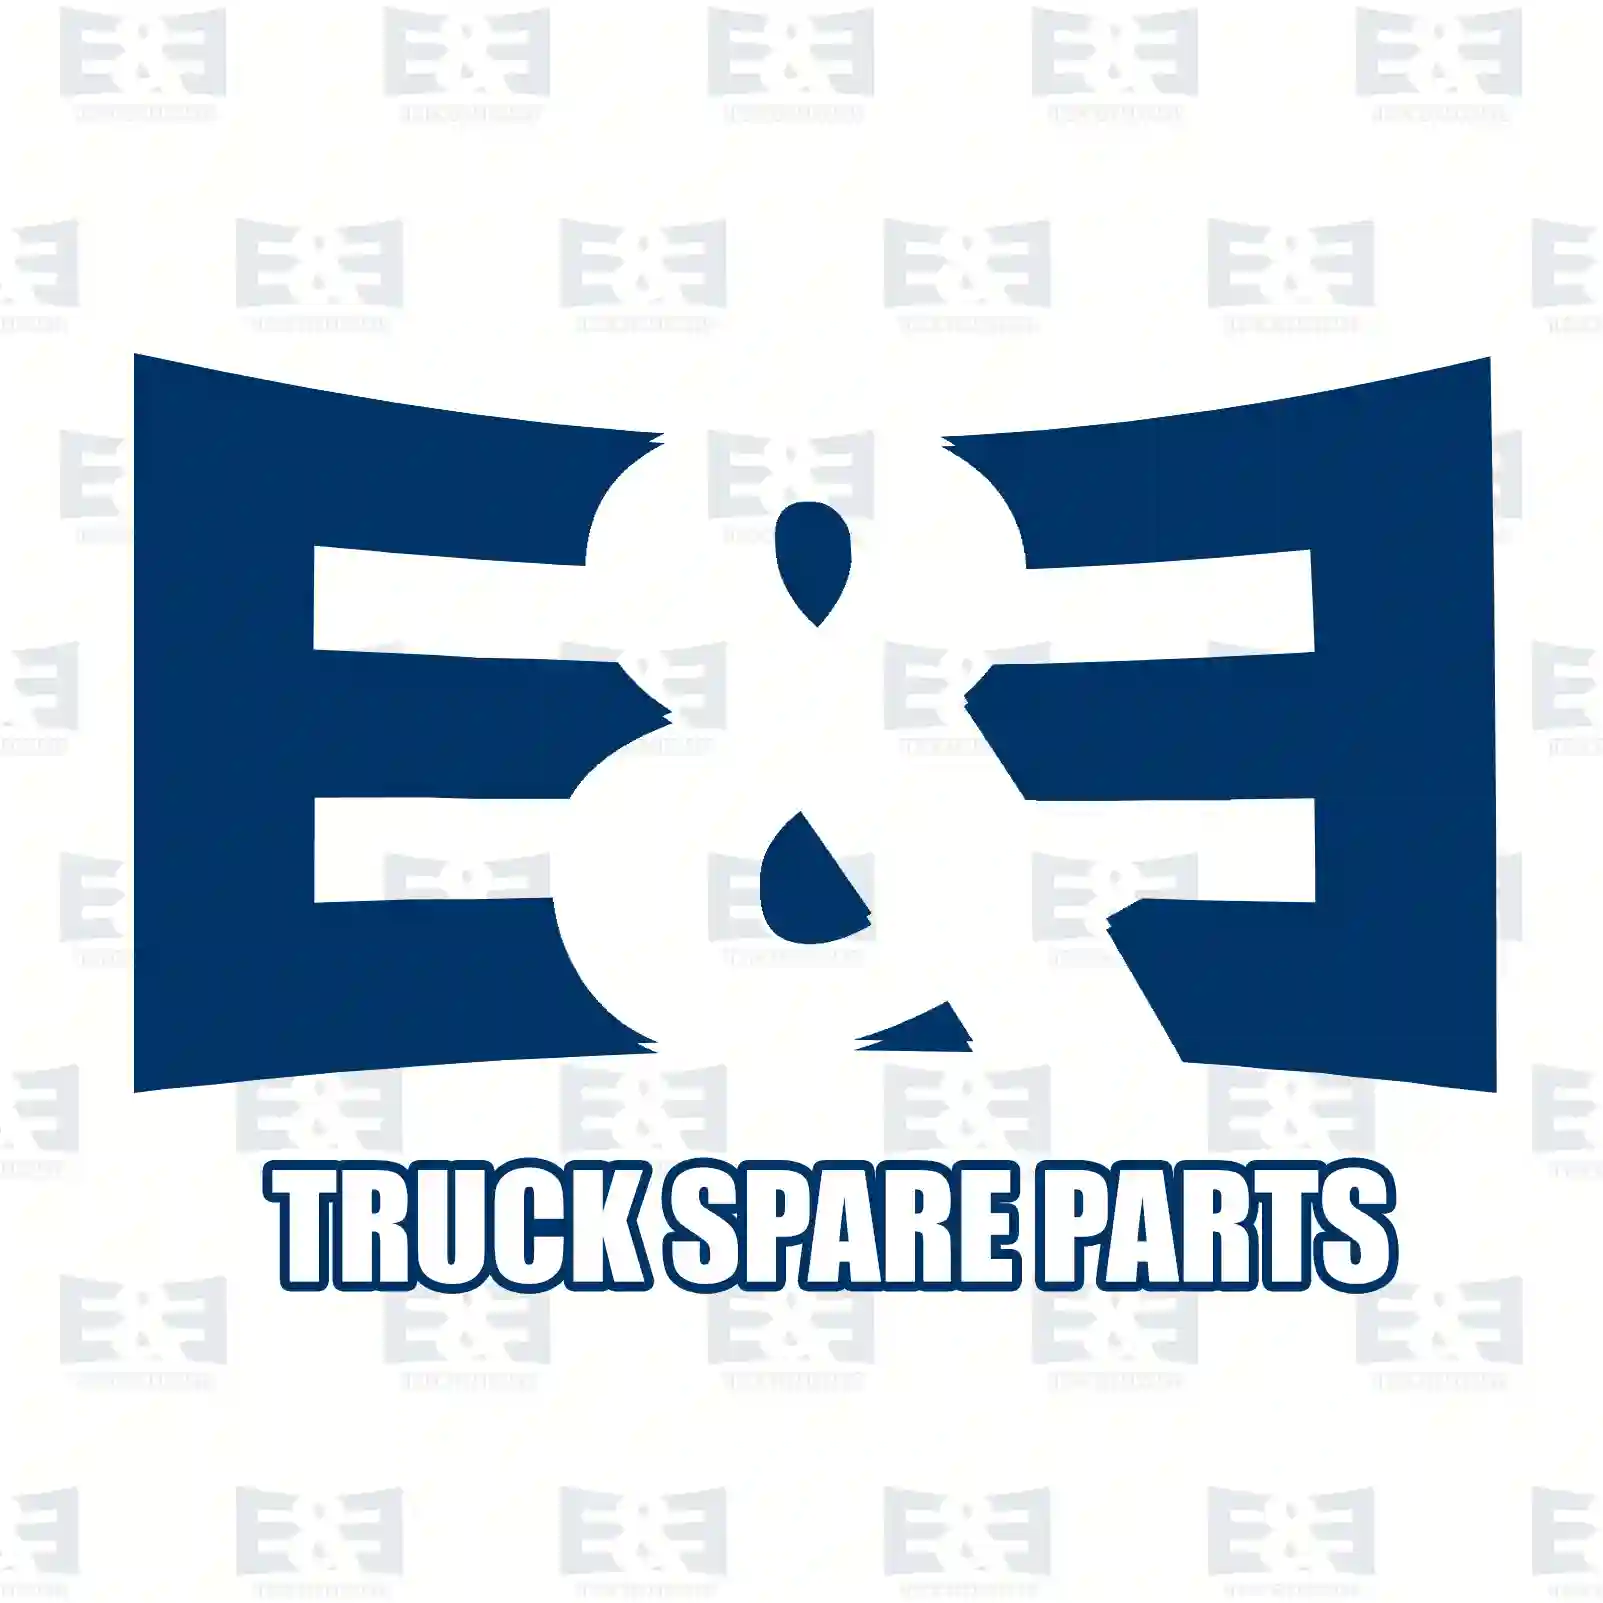 Cylinder head, compressor, 2E2293204, 1880194S12, 1901247S2, 1918307S2, 2024410S2 ||  2E2293204 E&E Truck Spare Parts | Truck Spare Parts, Auotomotive Spare Parts Cylinder head, compressor, 2E2293204, 1880194S12, 1901247S2, 1918307S2, 2024410S2 ||  2E2293204 E&E Truck Spare Parts | Truck Spare Parts, Auotomotive Spare Parts